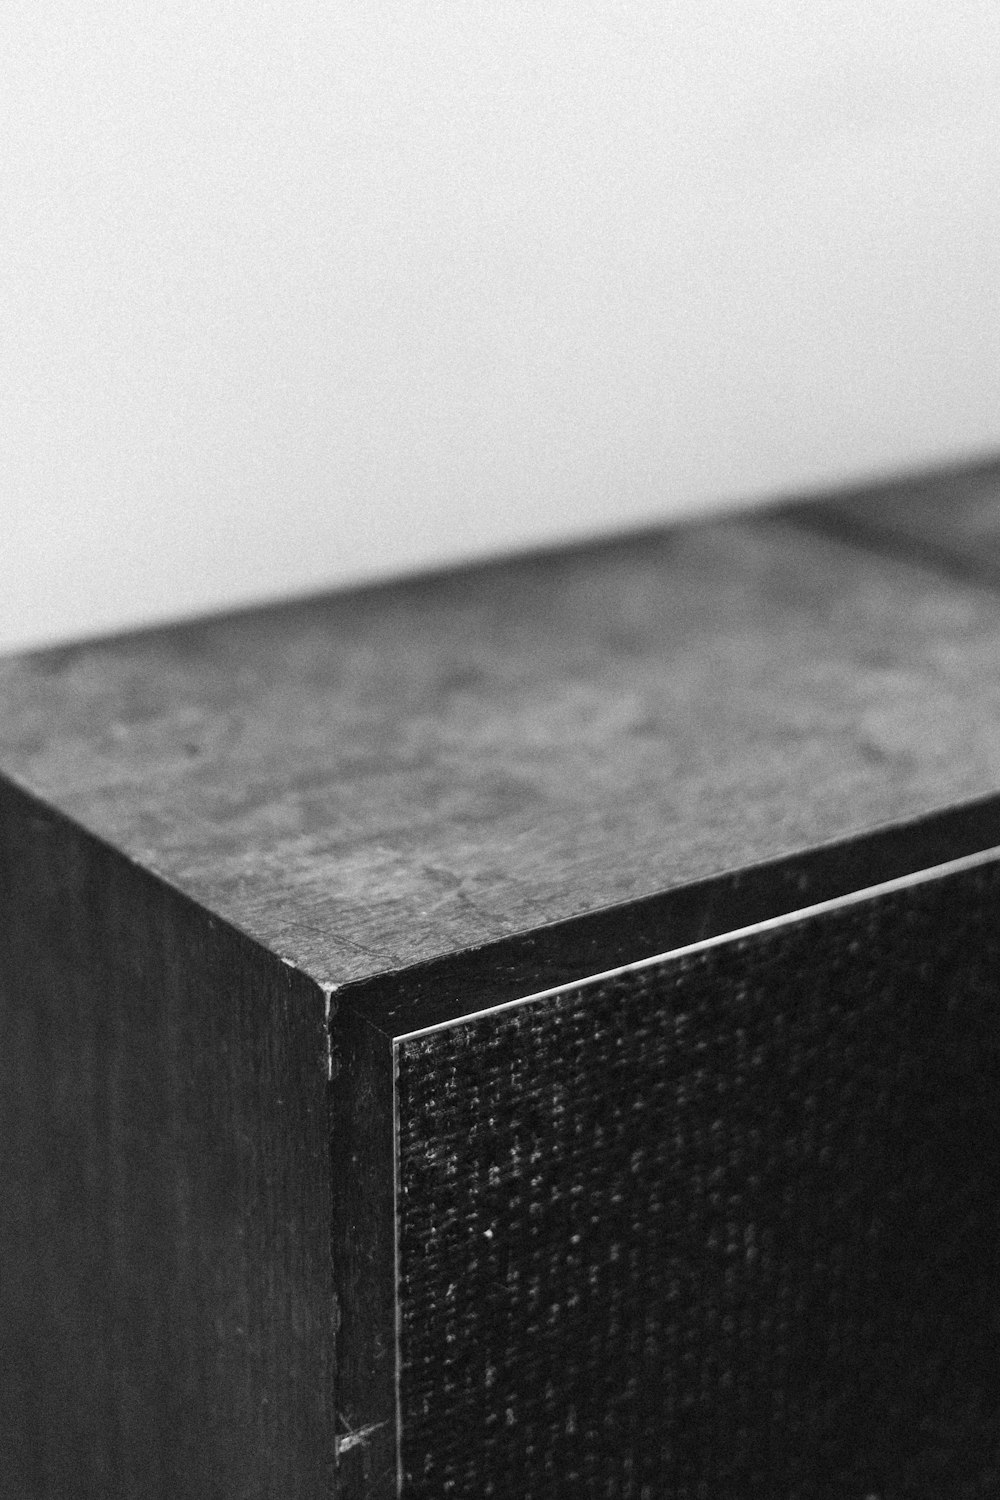 Table en bois noir et blanc